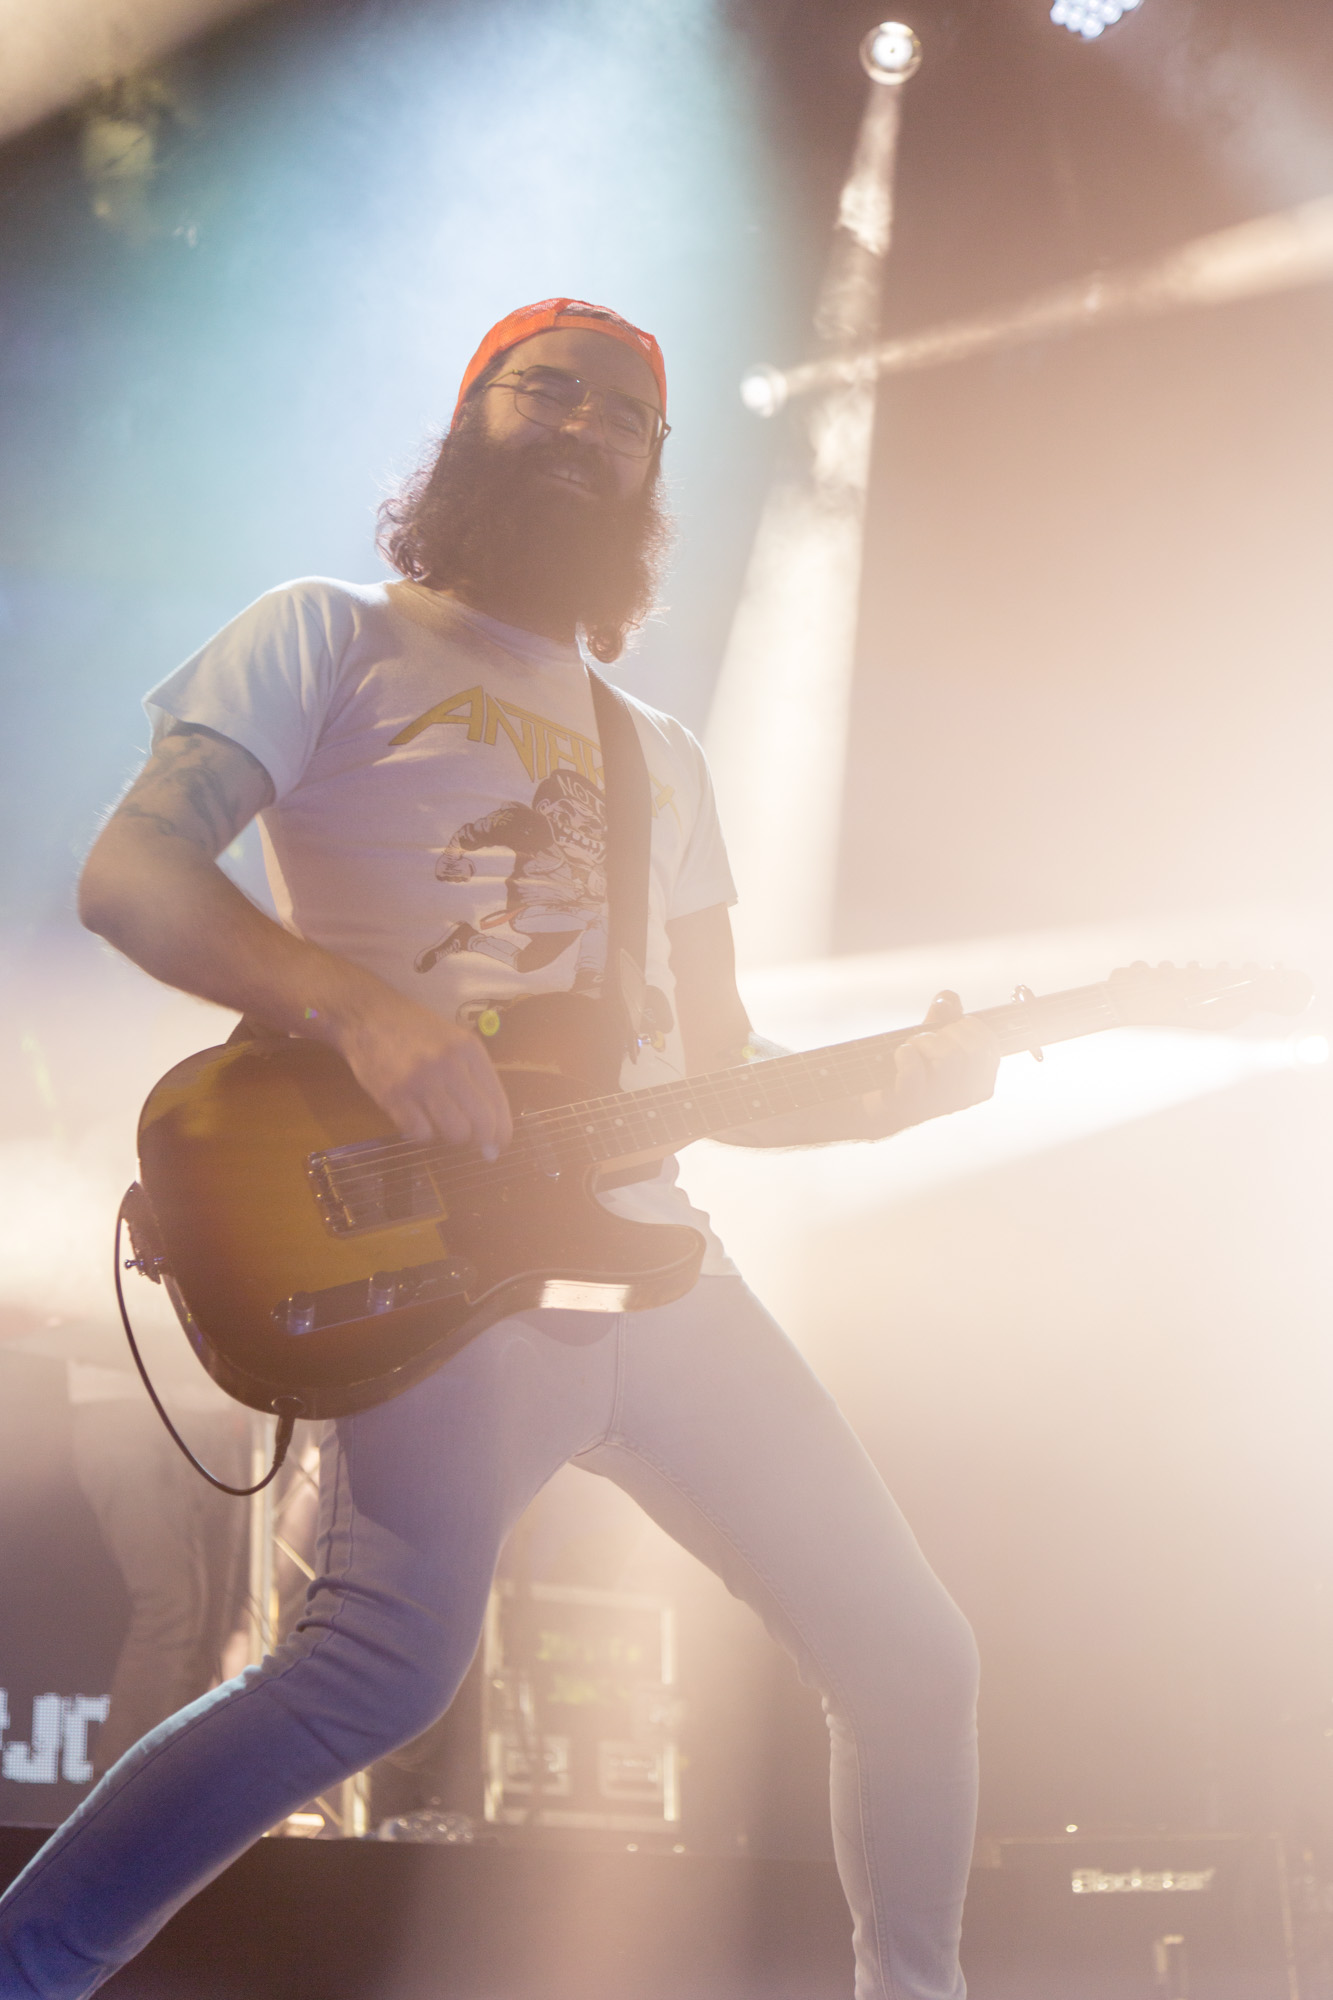 Gitarrist von Jupiter Jones auf der Bühne in gelblichen Lichtsetup